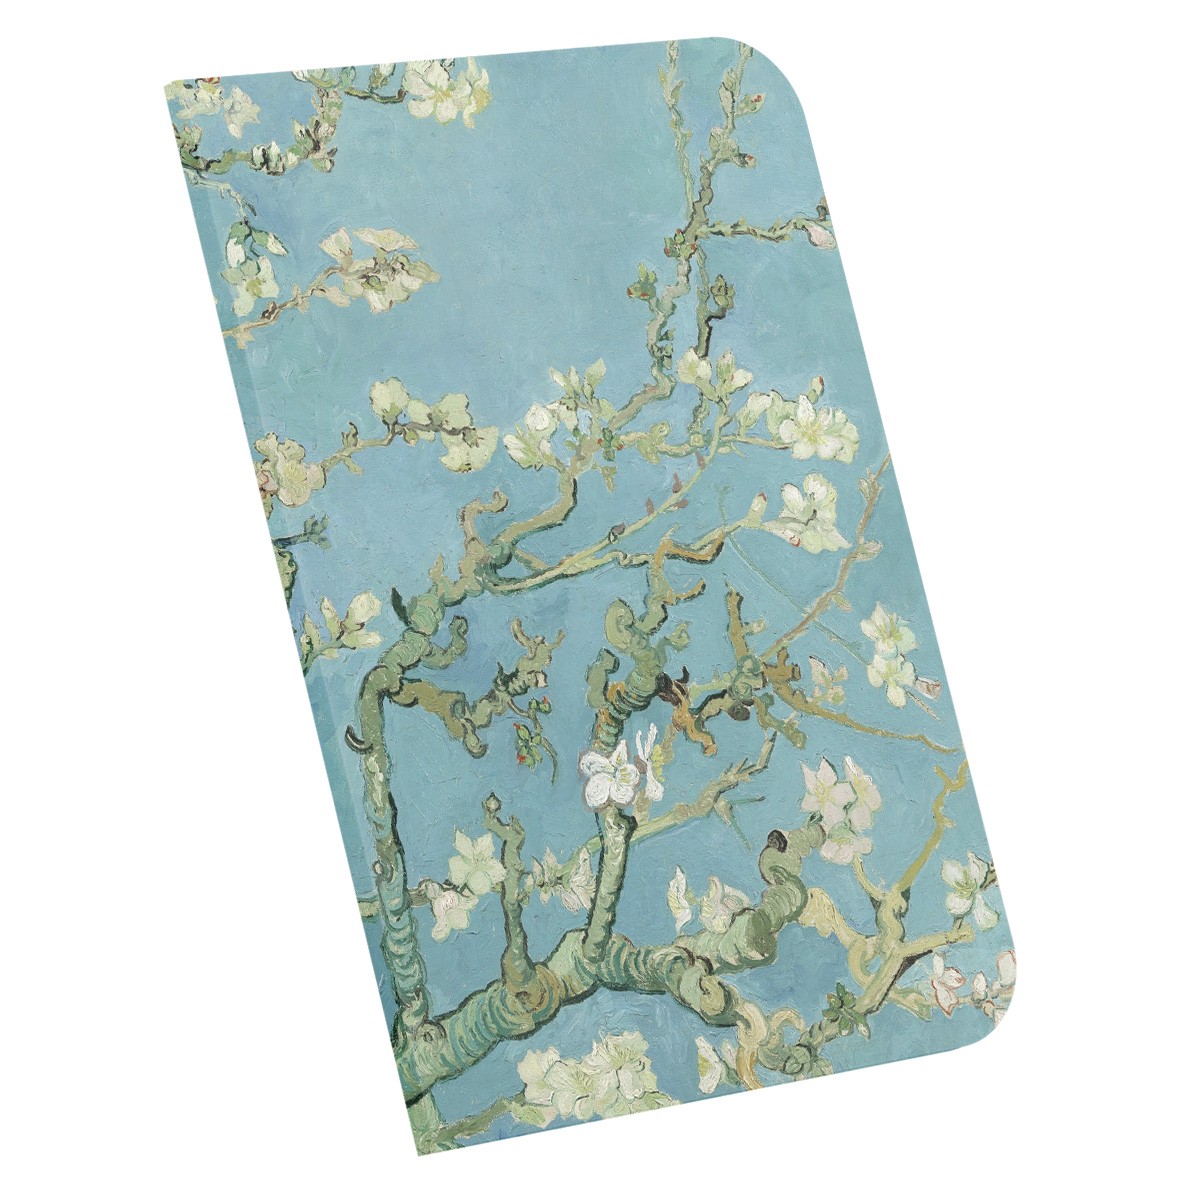 Almond Blossoms / Van Gogh, 1890 / A4 Defter -3